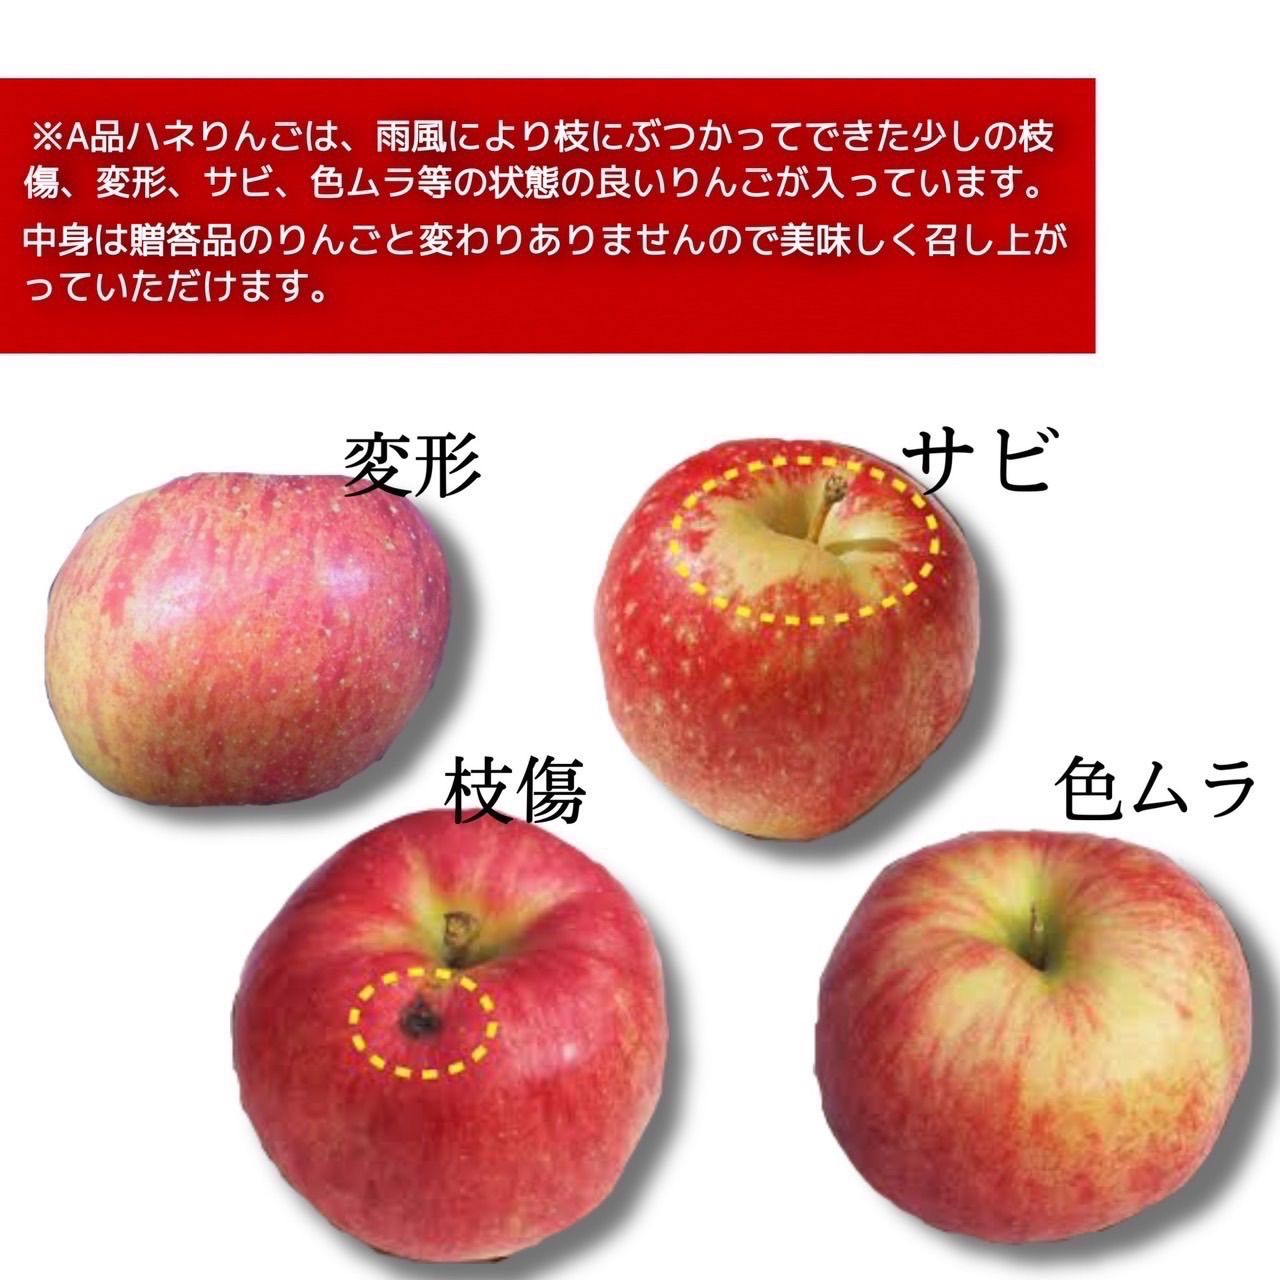 青森県産 最大4種ミックス りんご【A品3kg】【送料無料】【農家直送】ふじ-5